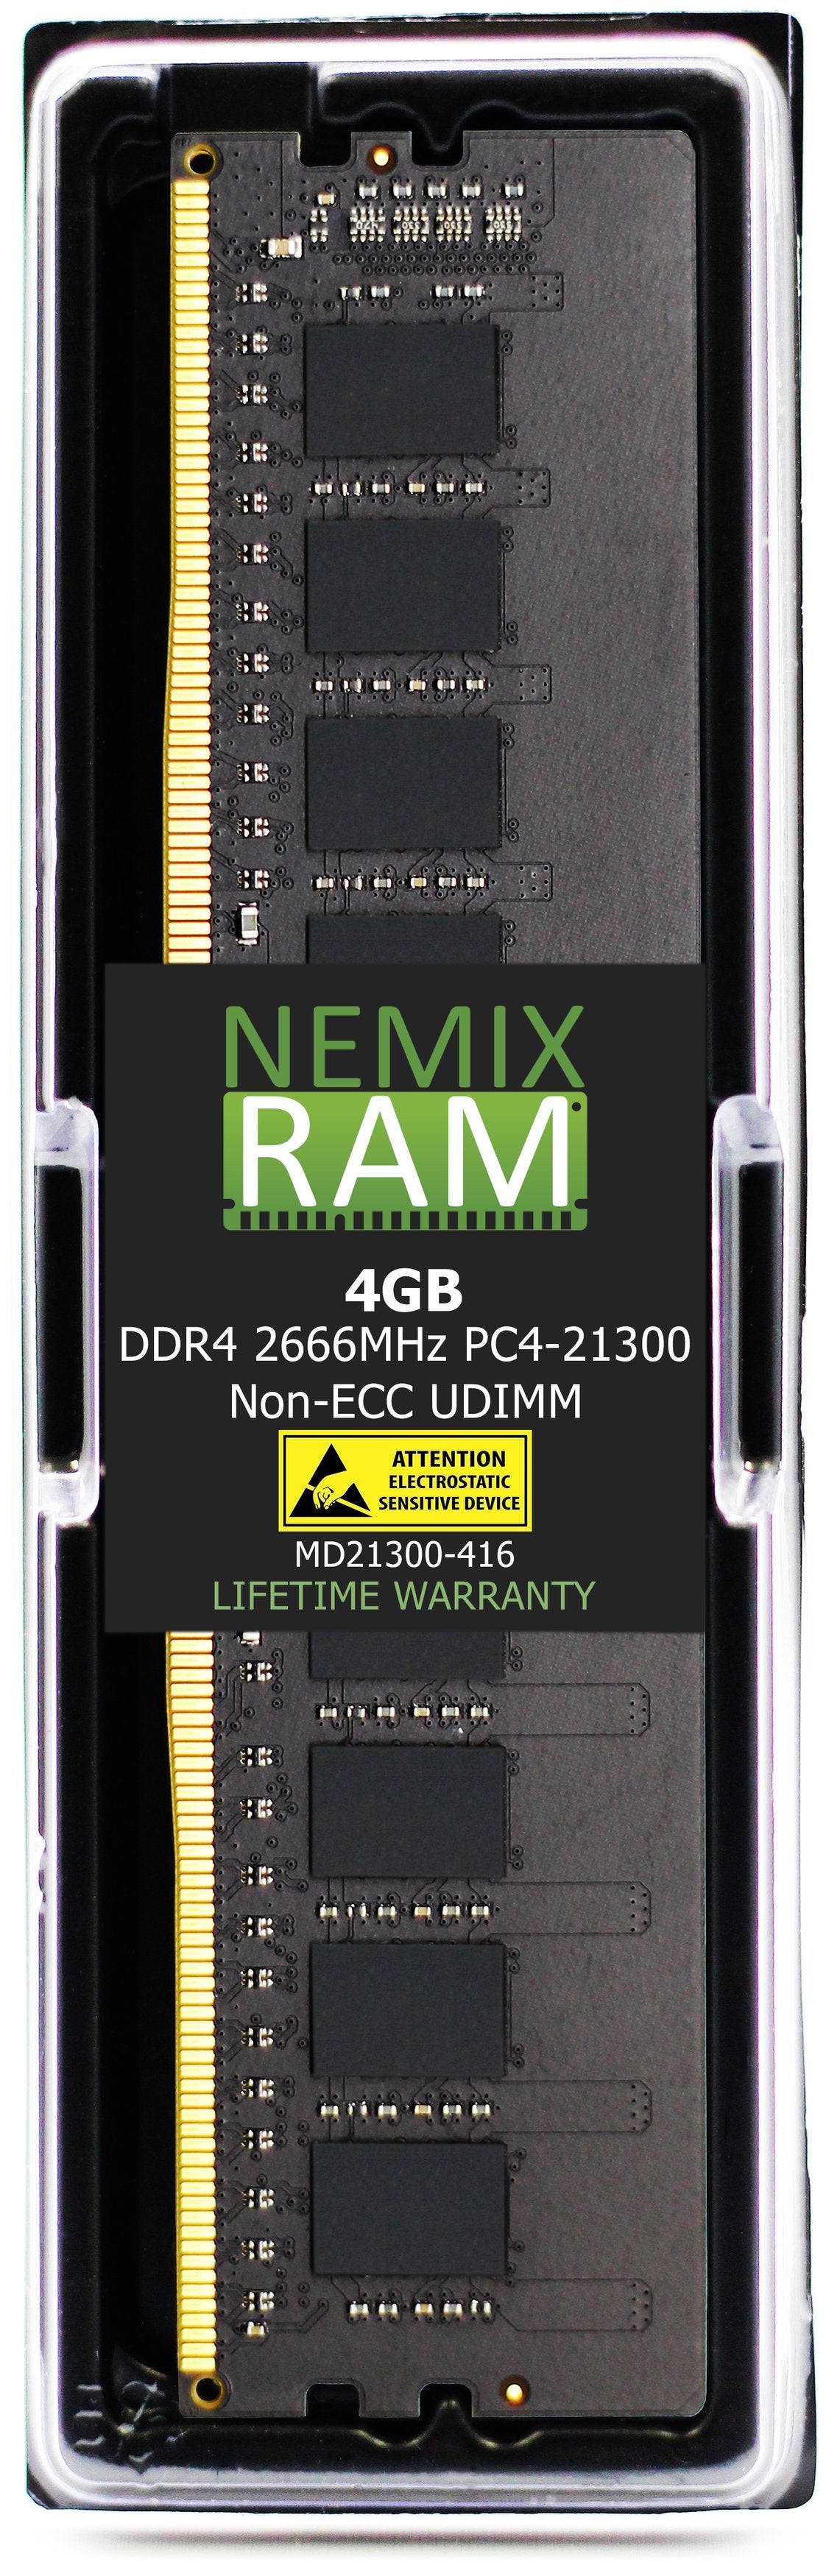 Hynix HMA851U6CJR6N-VK 4GB DDR4 2666MHZ PC4-21300 UDIMM Compatible Memory Module